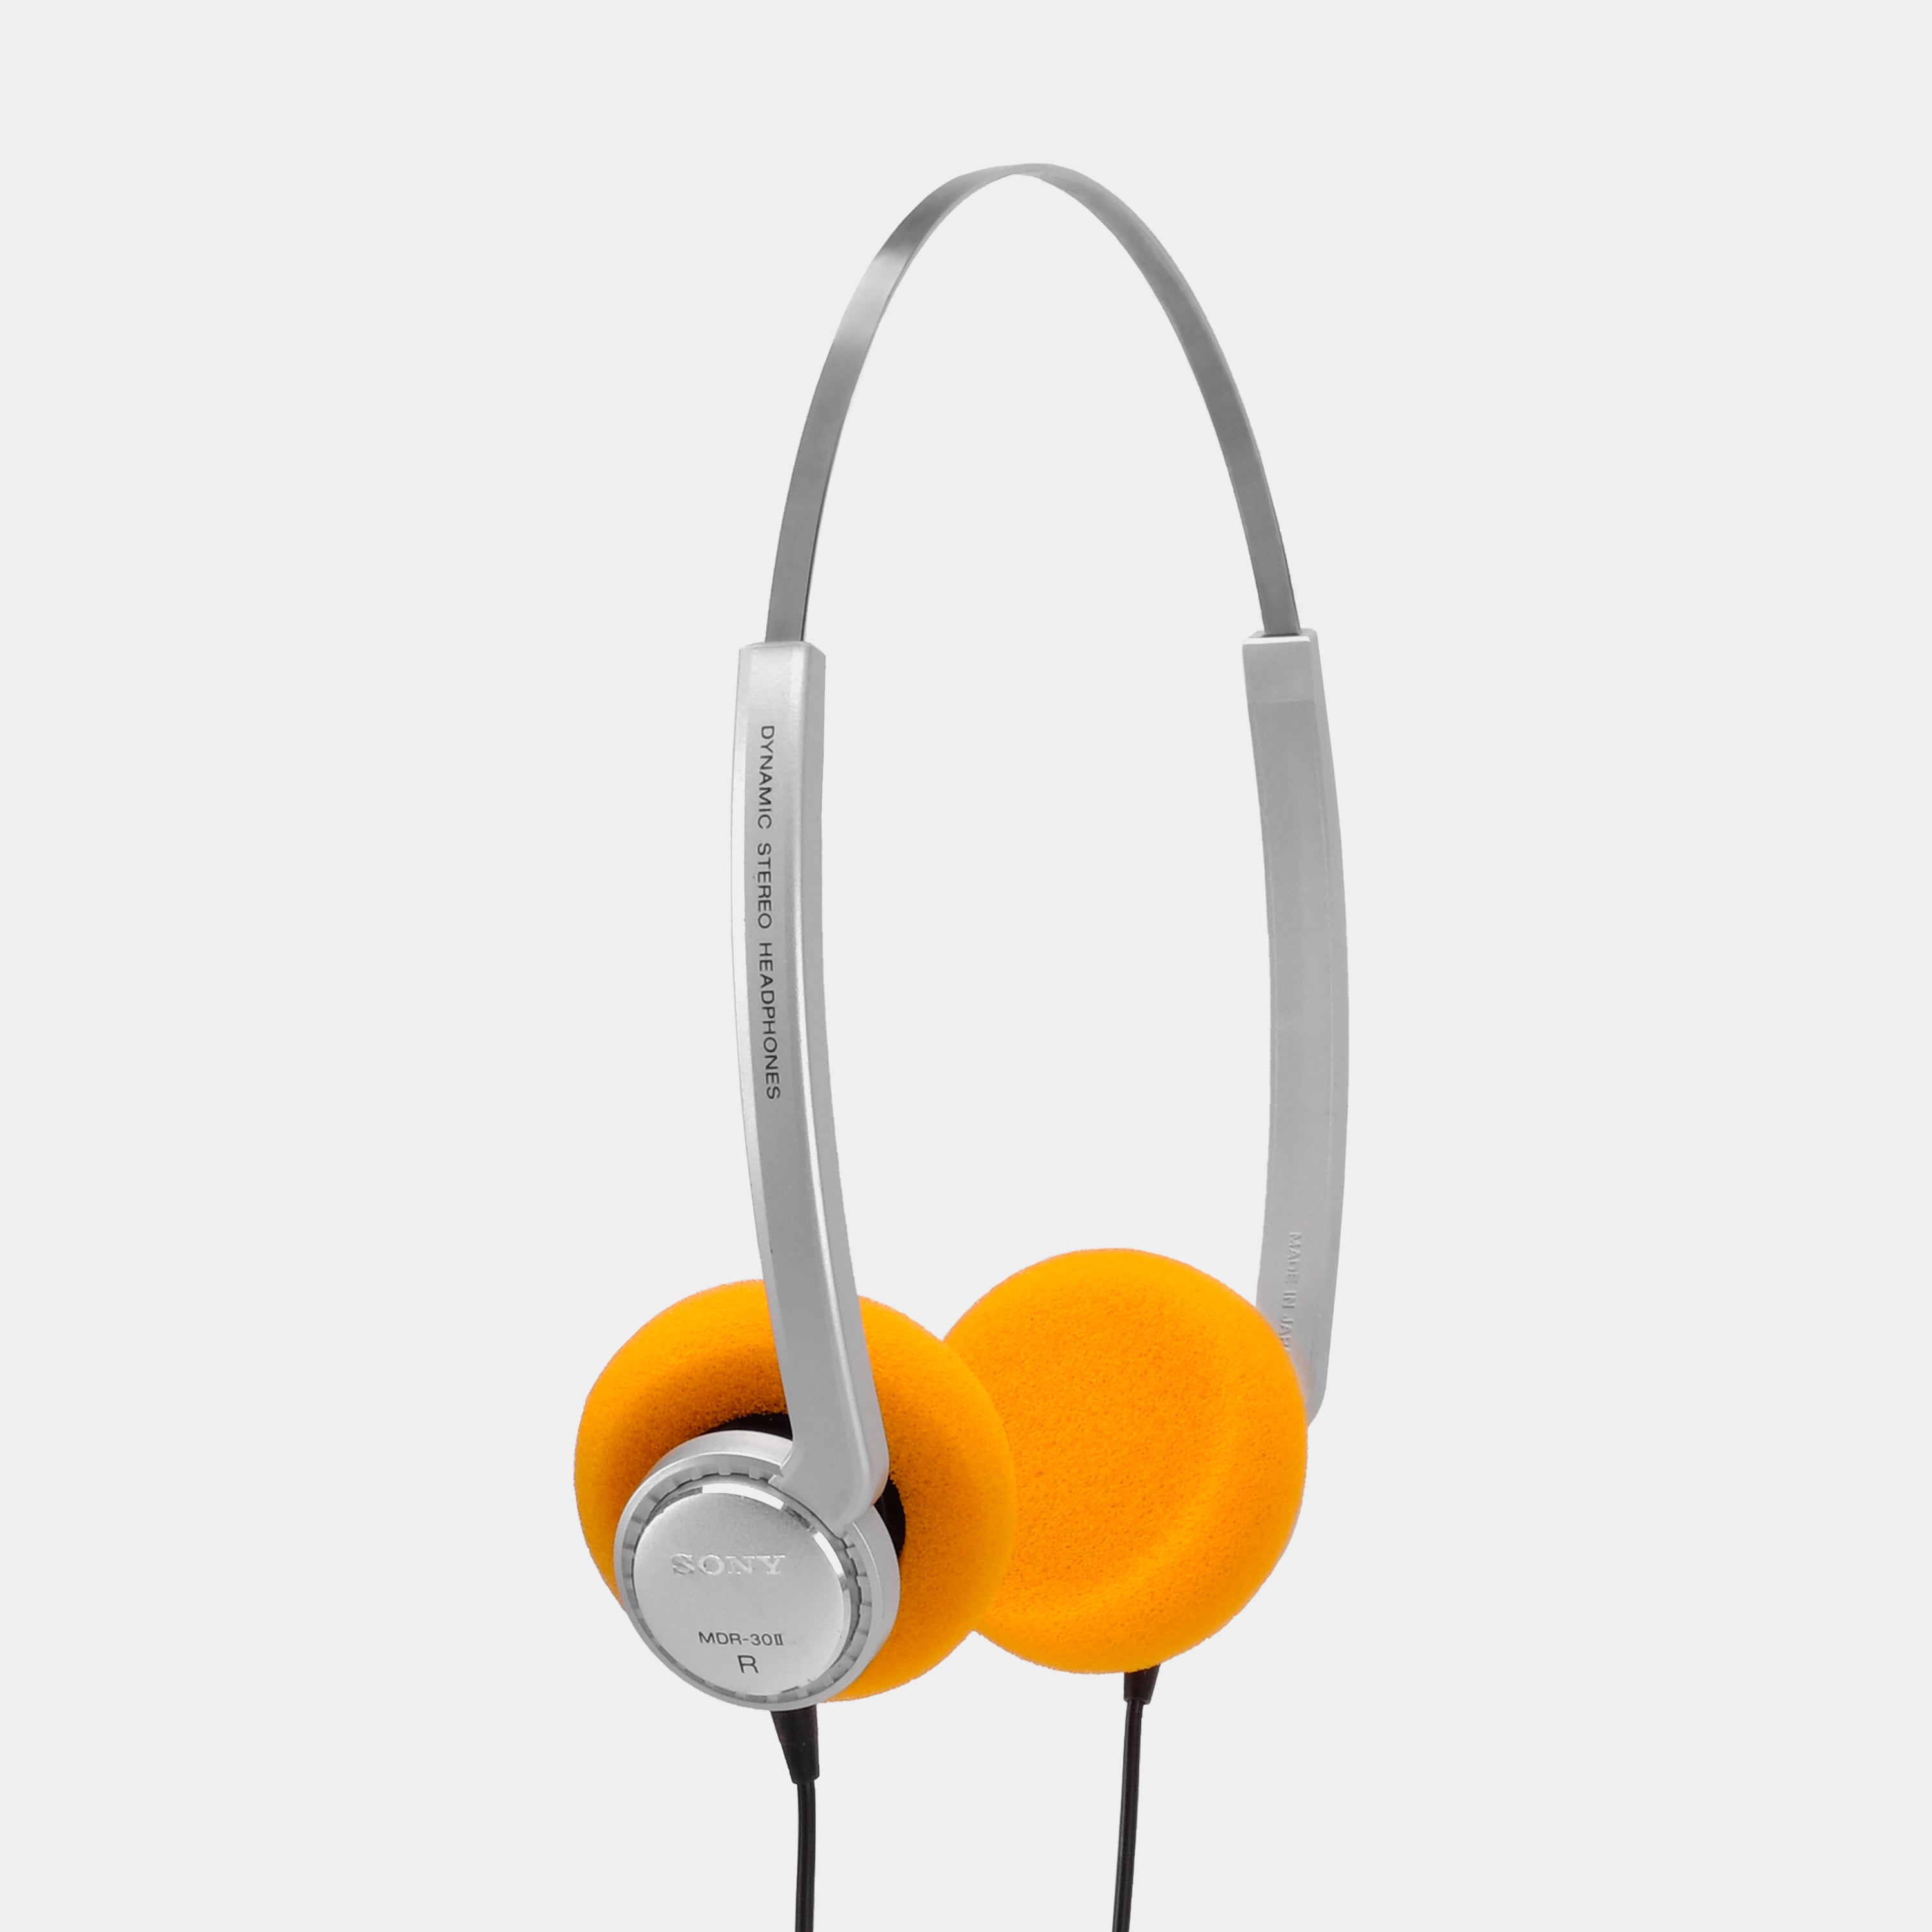 Sony Walkman MDR-30II On-Ear Headphones